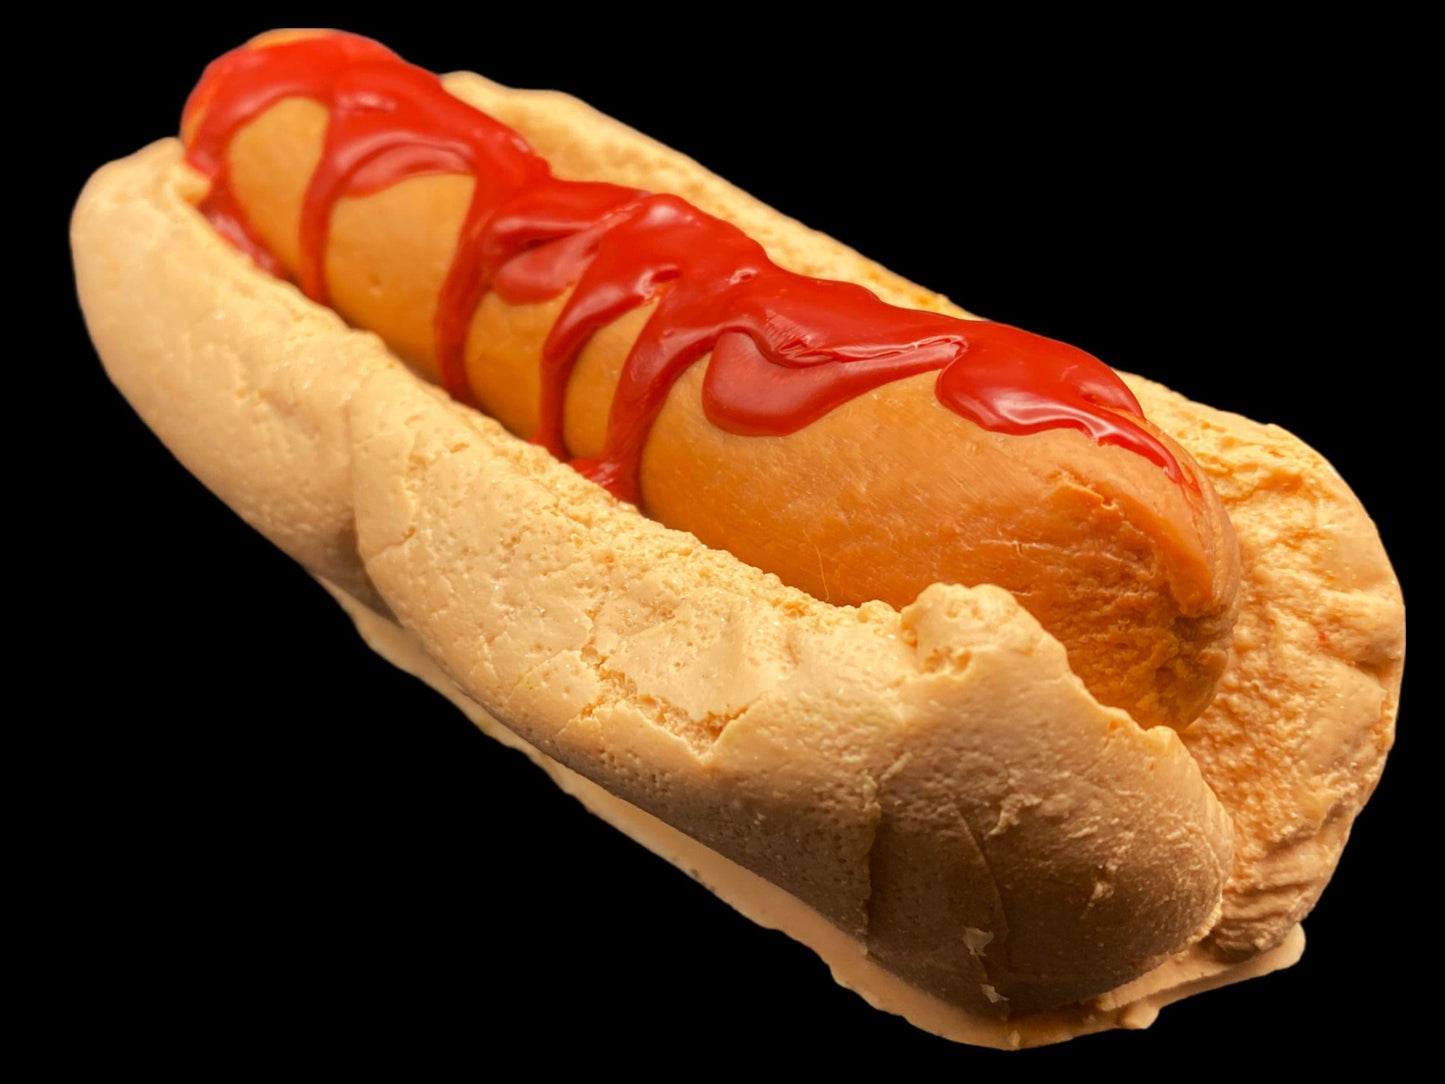 #8-Hot Dog on Bun Soap - Biggie Bites Soap Co.